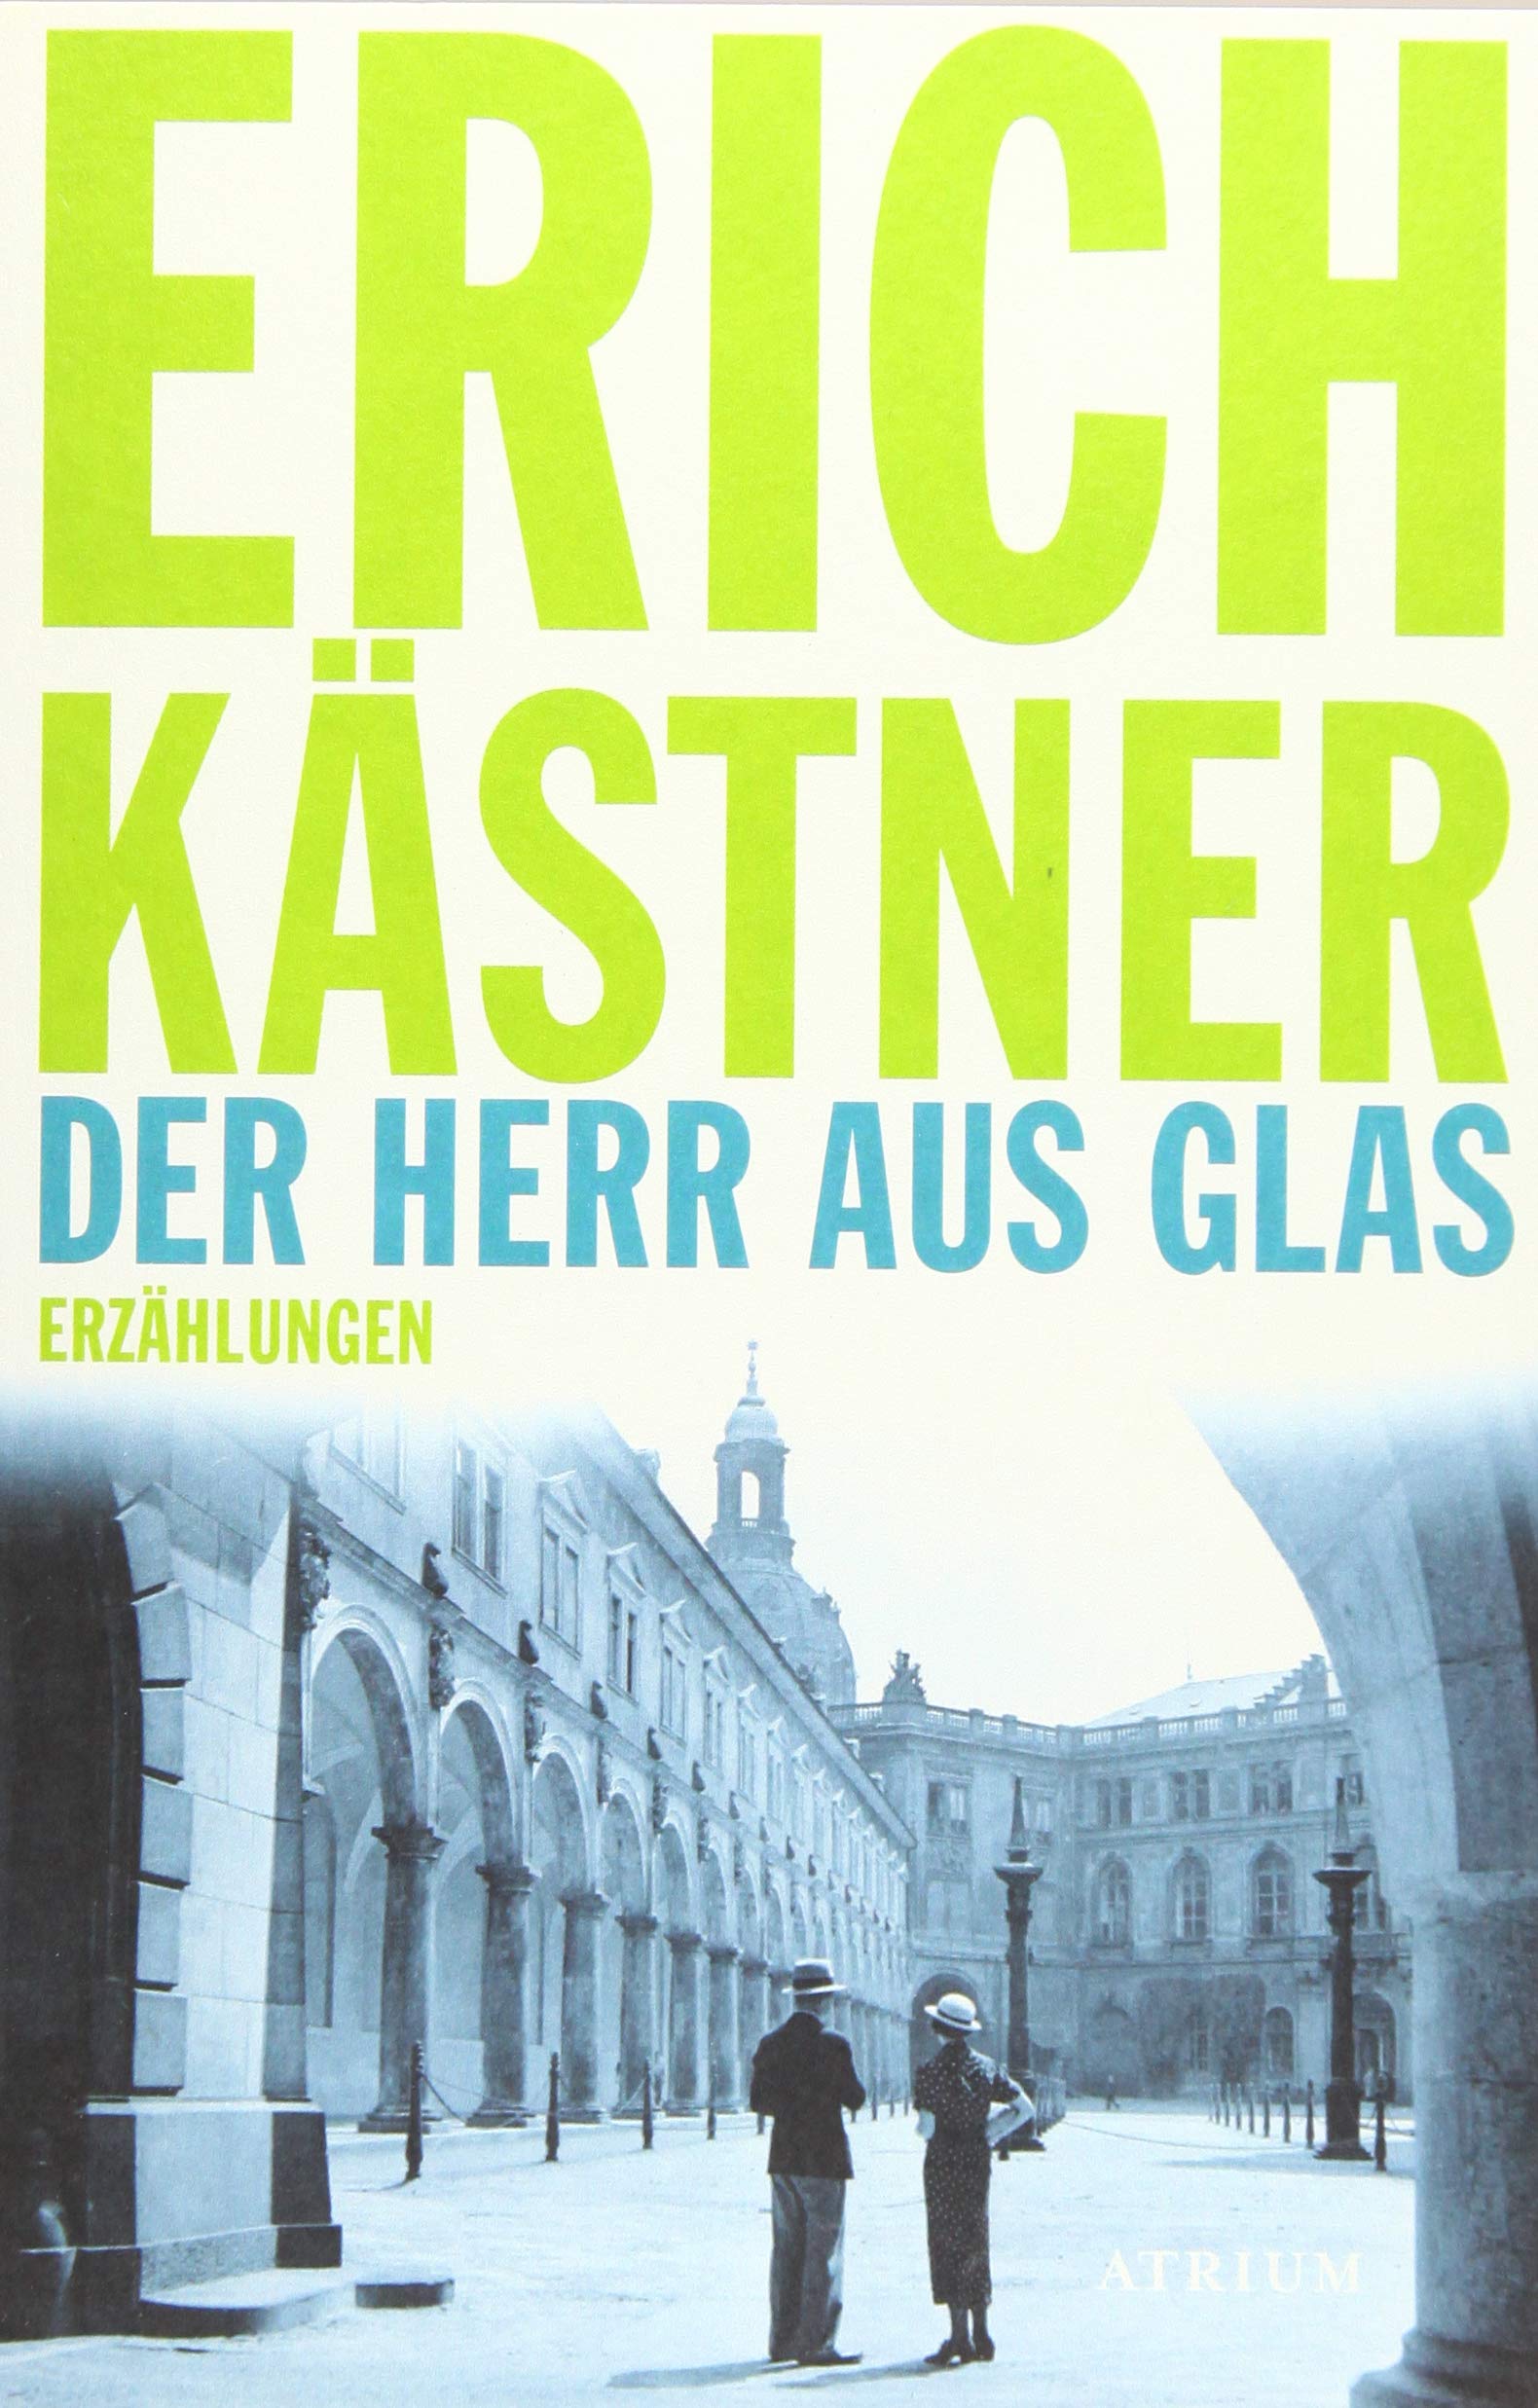 Der Herr aus Glas: Erzahlungen | Erich Kastner